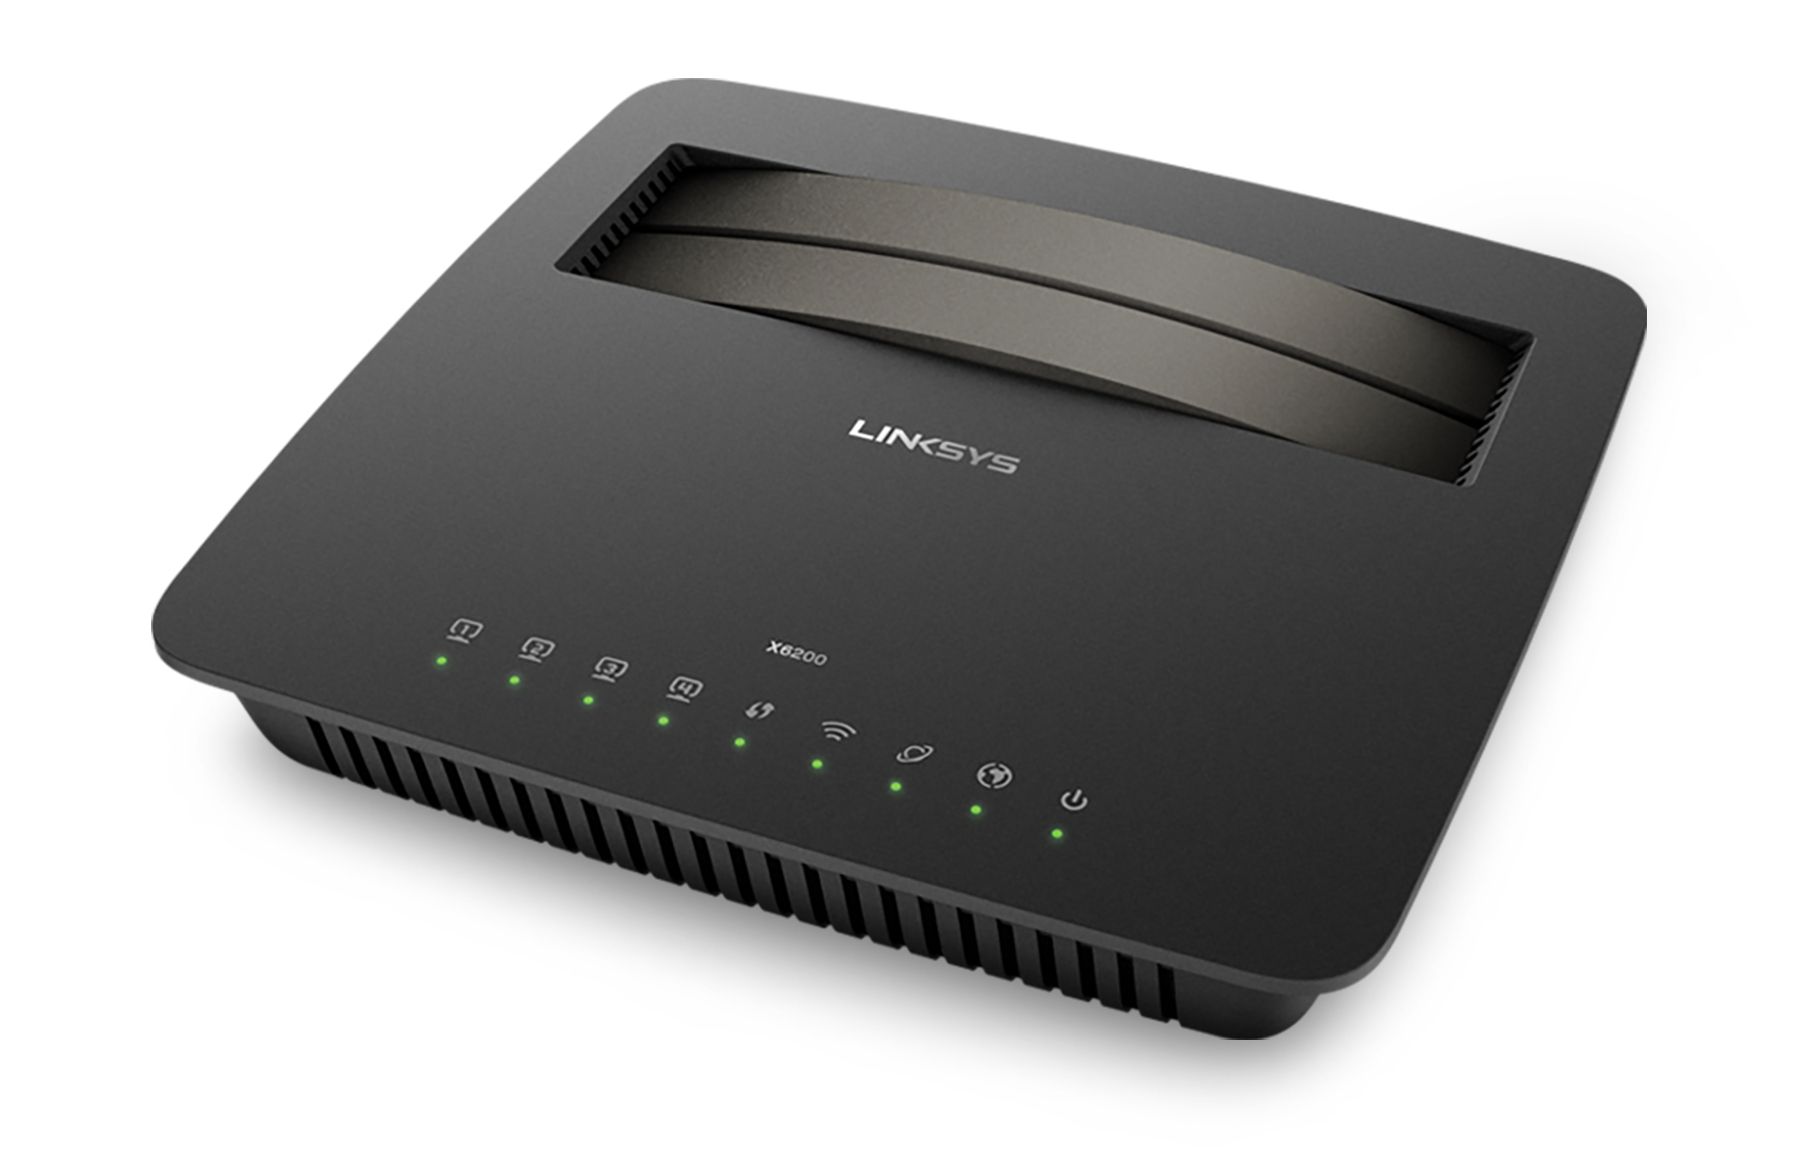 ลิงค์ซิสแนะนำโมเด็มเราเตอร์ Linksys X6200 ADSL/VDSL Dual-Band WiFi AC750